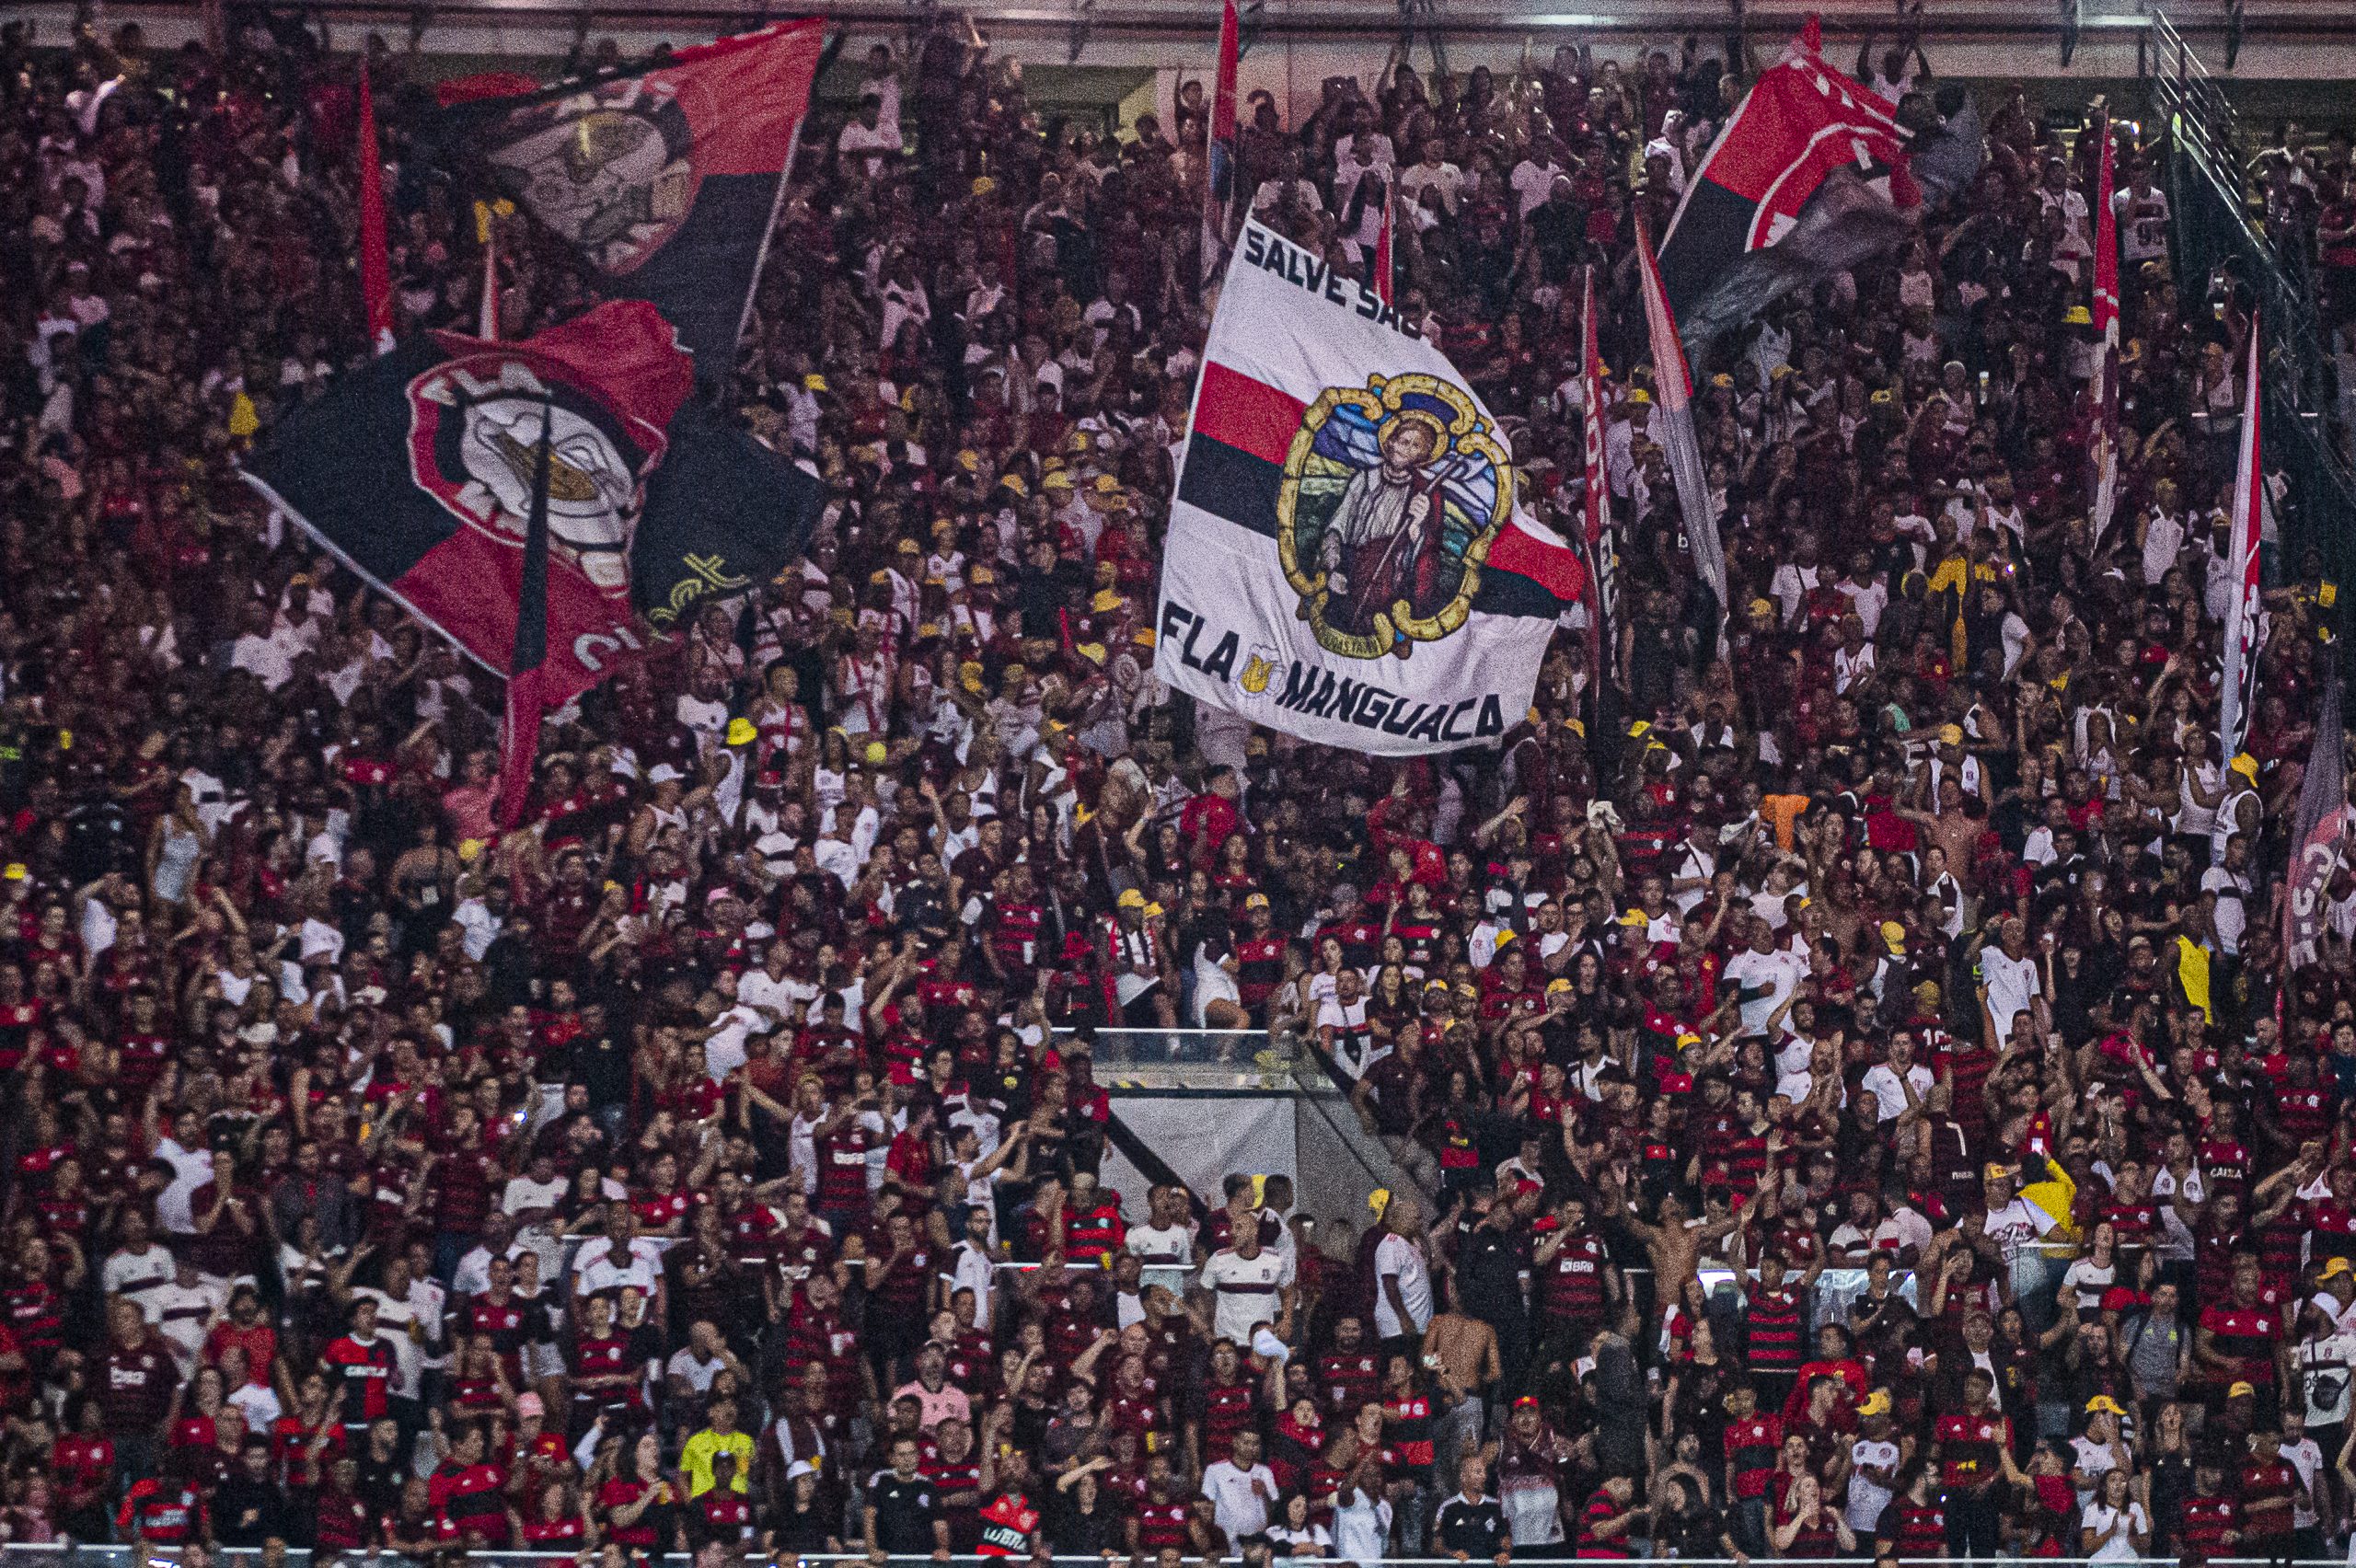 Flamengo divulga relacionados para semifinal contra o Vasco; confira, flamengo